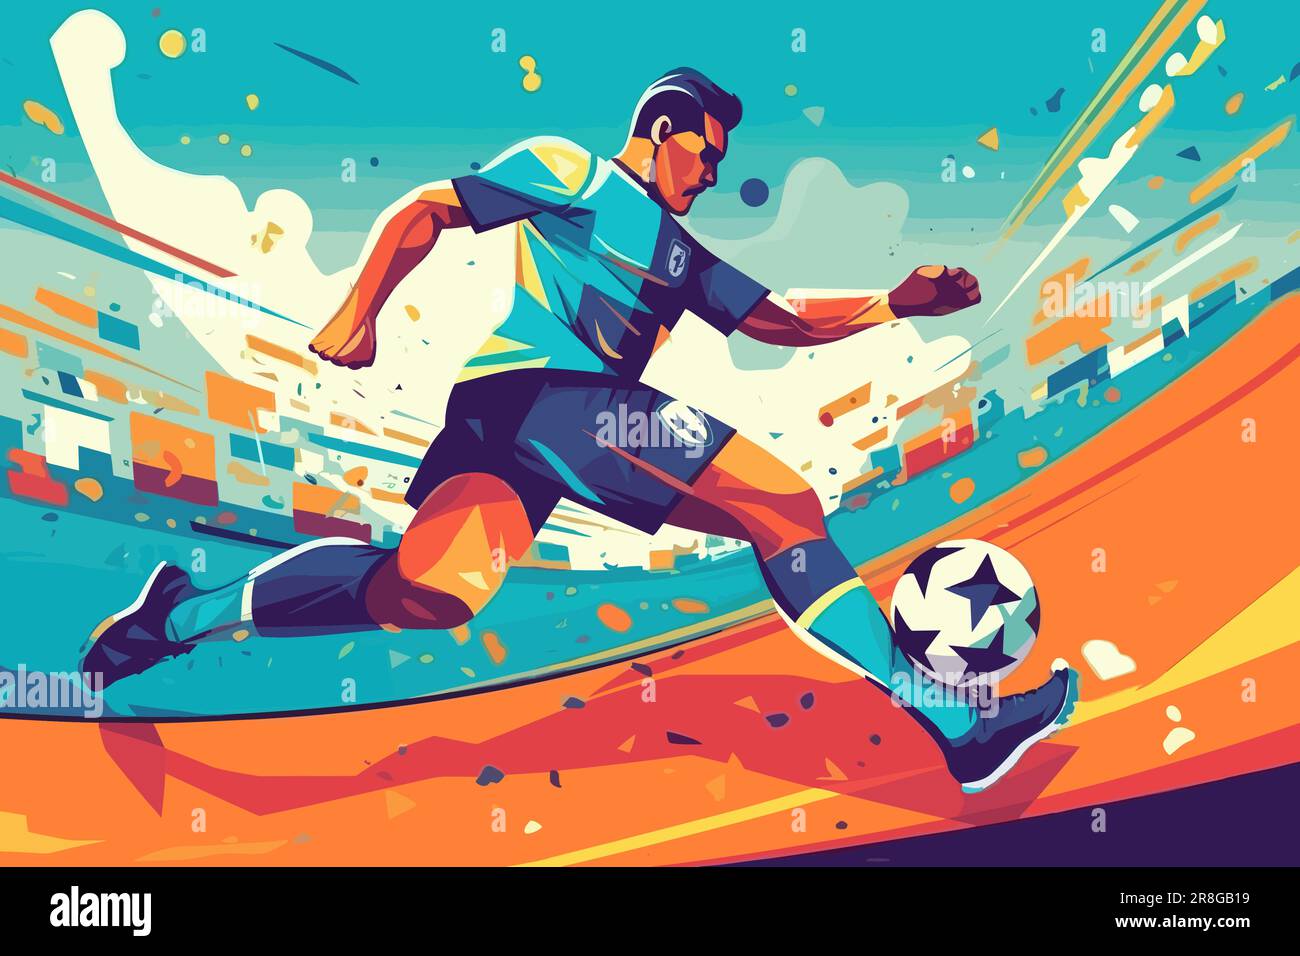 Joueur de football dribbling avec ballon de football, affiche colorée de style art plat, illustration vectorielle. Illustration de Vecteur